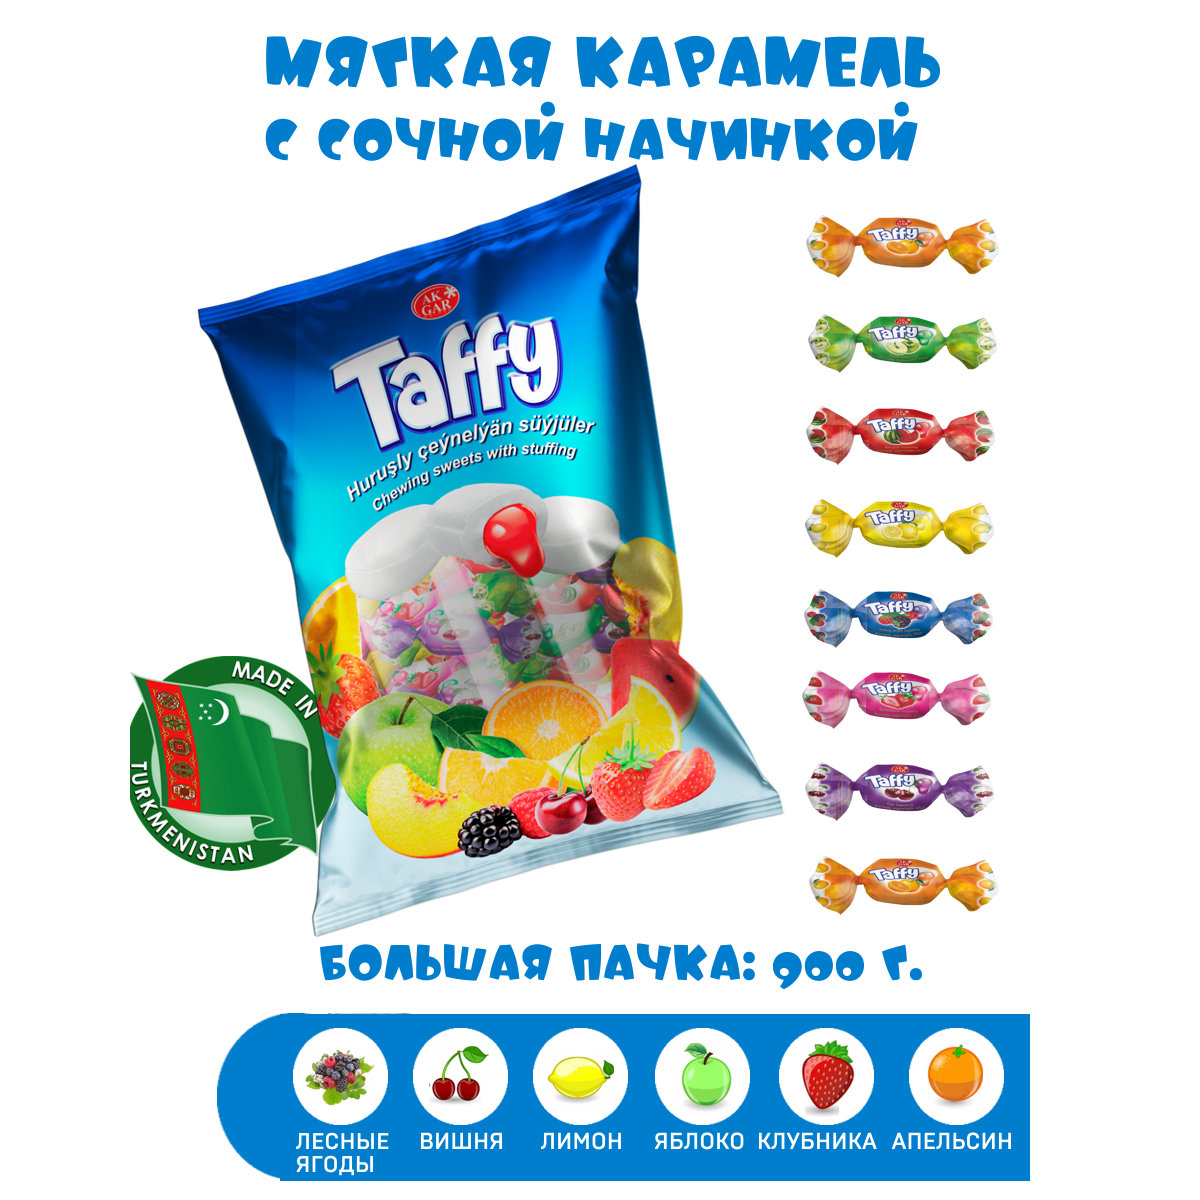 Жевательные конфеты Ak Gar мягкая карамель Taffy ассорти, 900 г